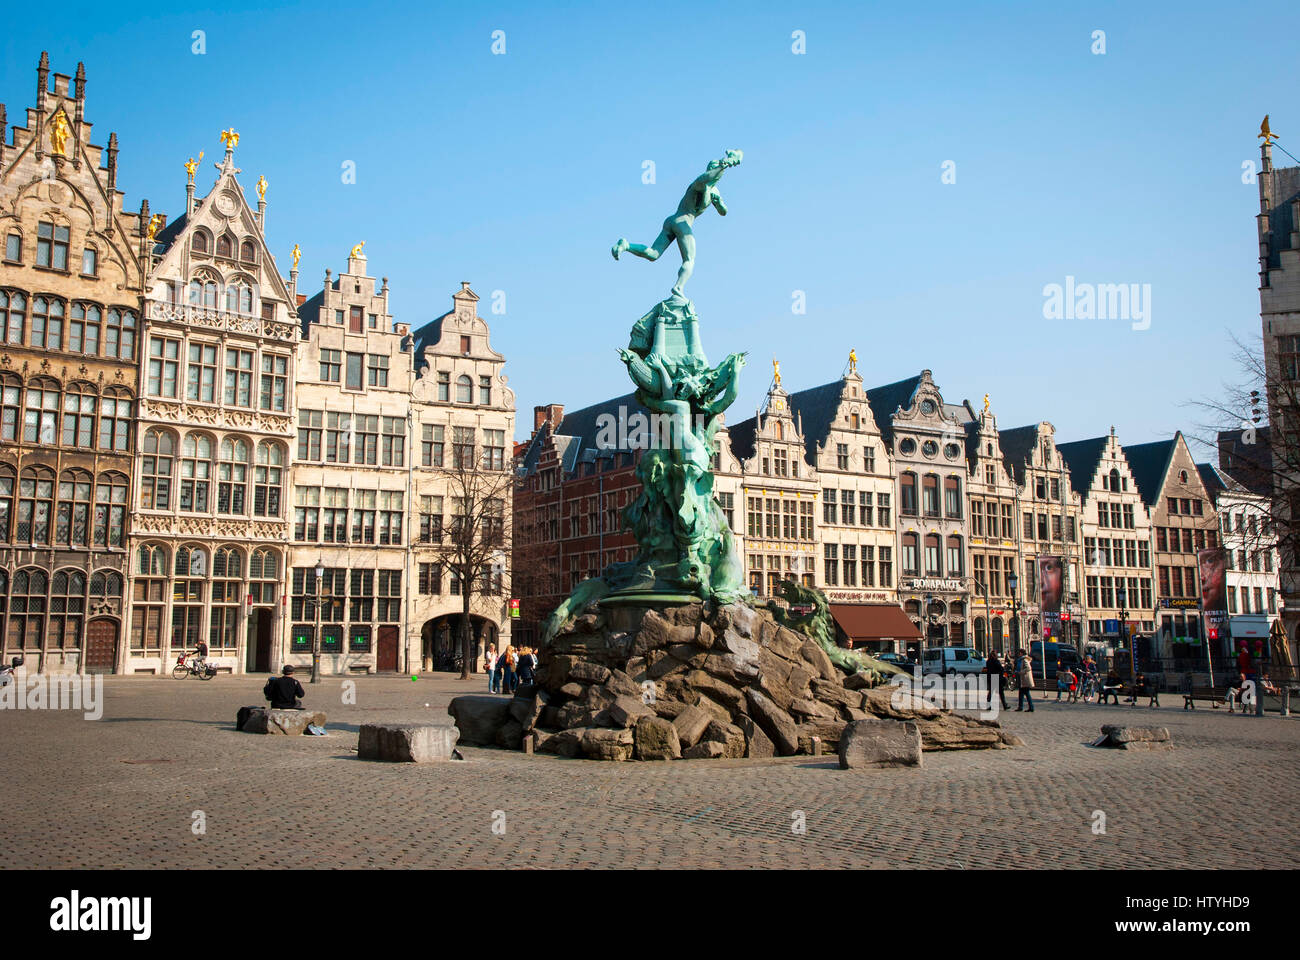 Alte Stadt von Antwerpen mit typischen alten Häusern, Belgien Stockfoto